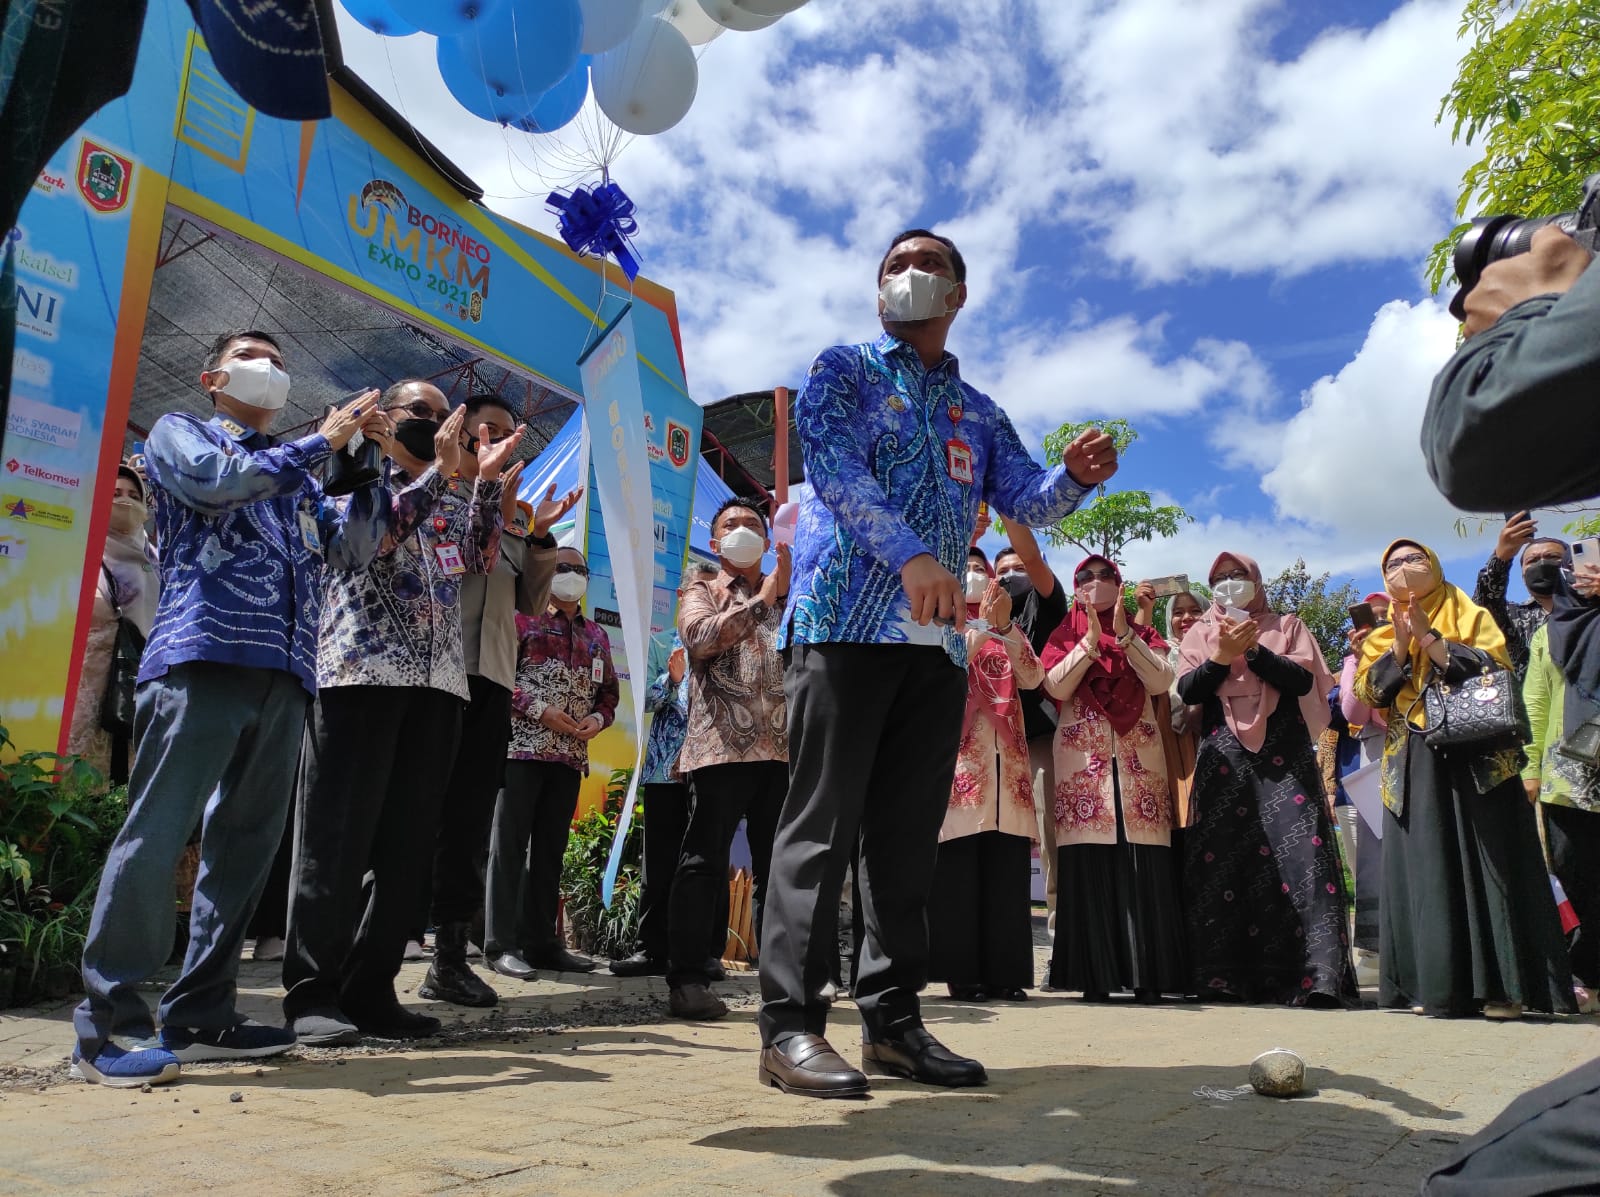 Walikota Banjarbaru Aditya Mufti Arifin mendukung dan mengapresiasi adanya event UMKM